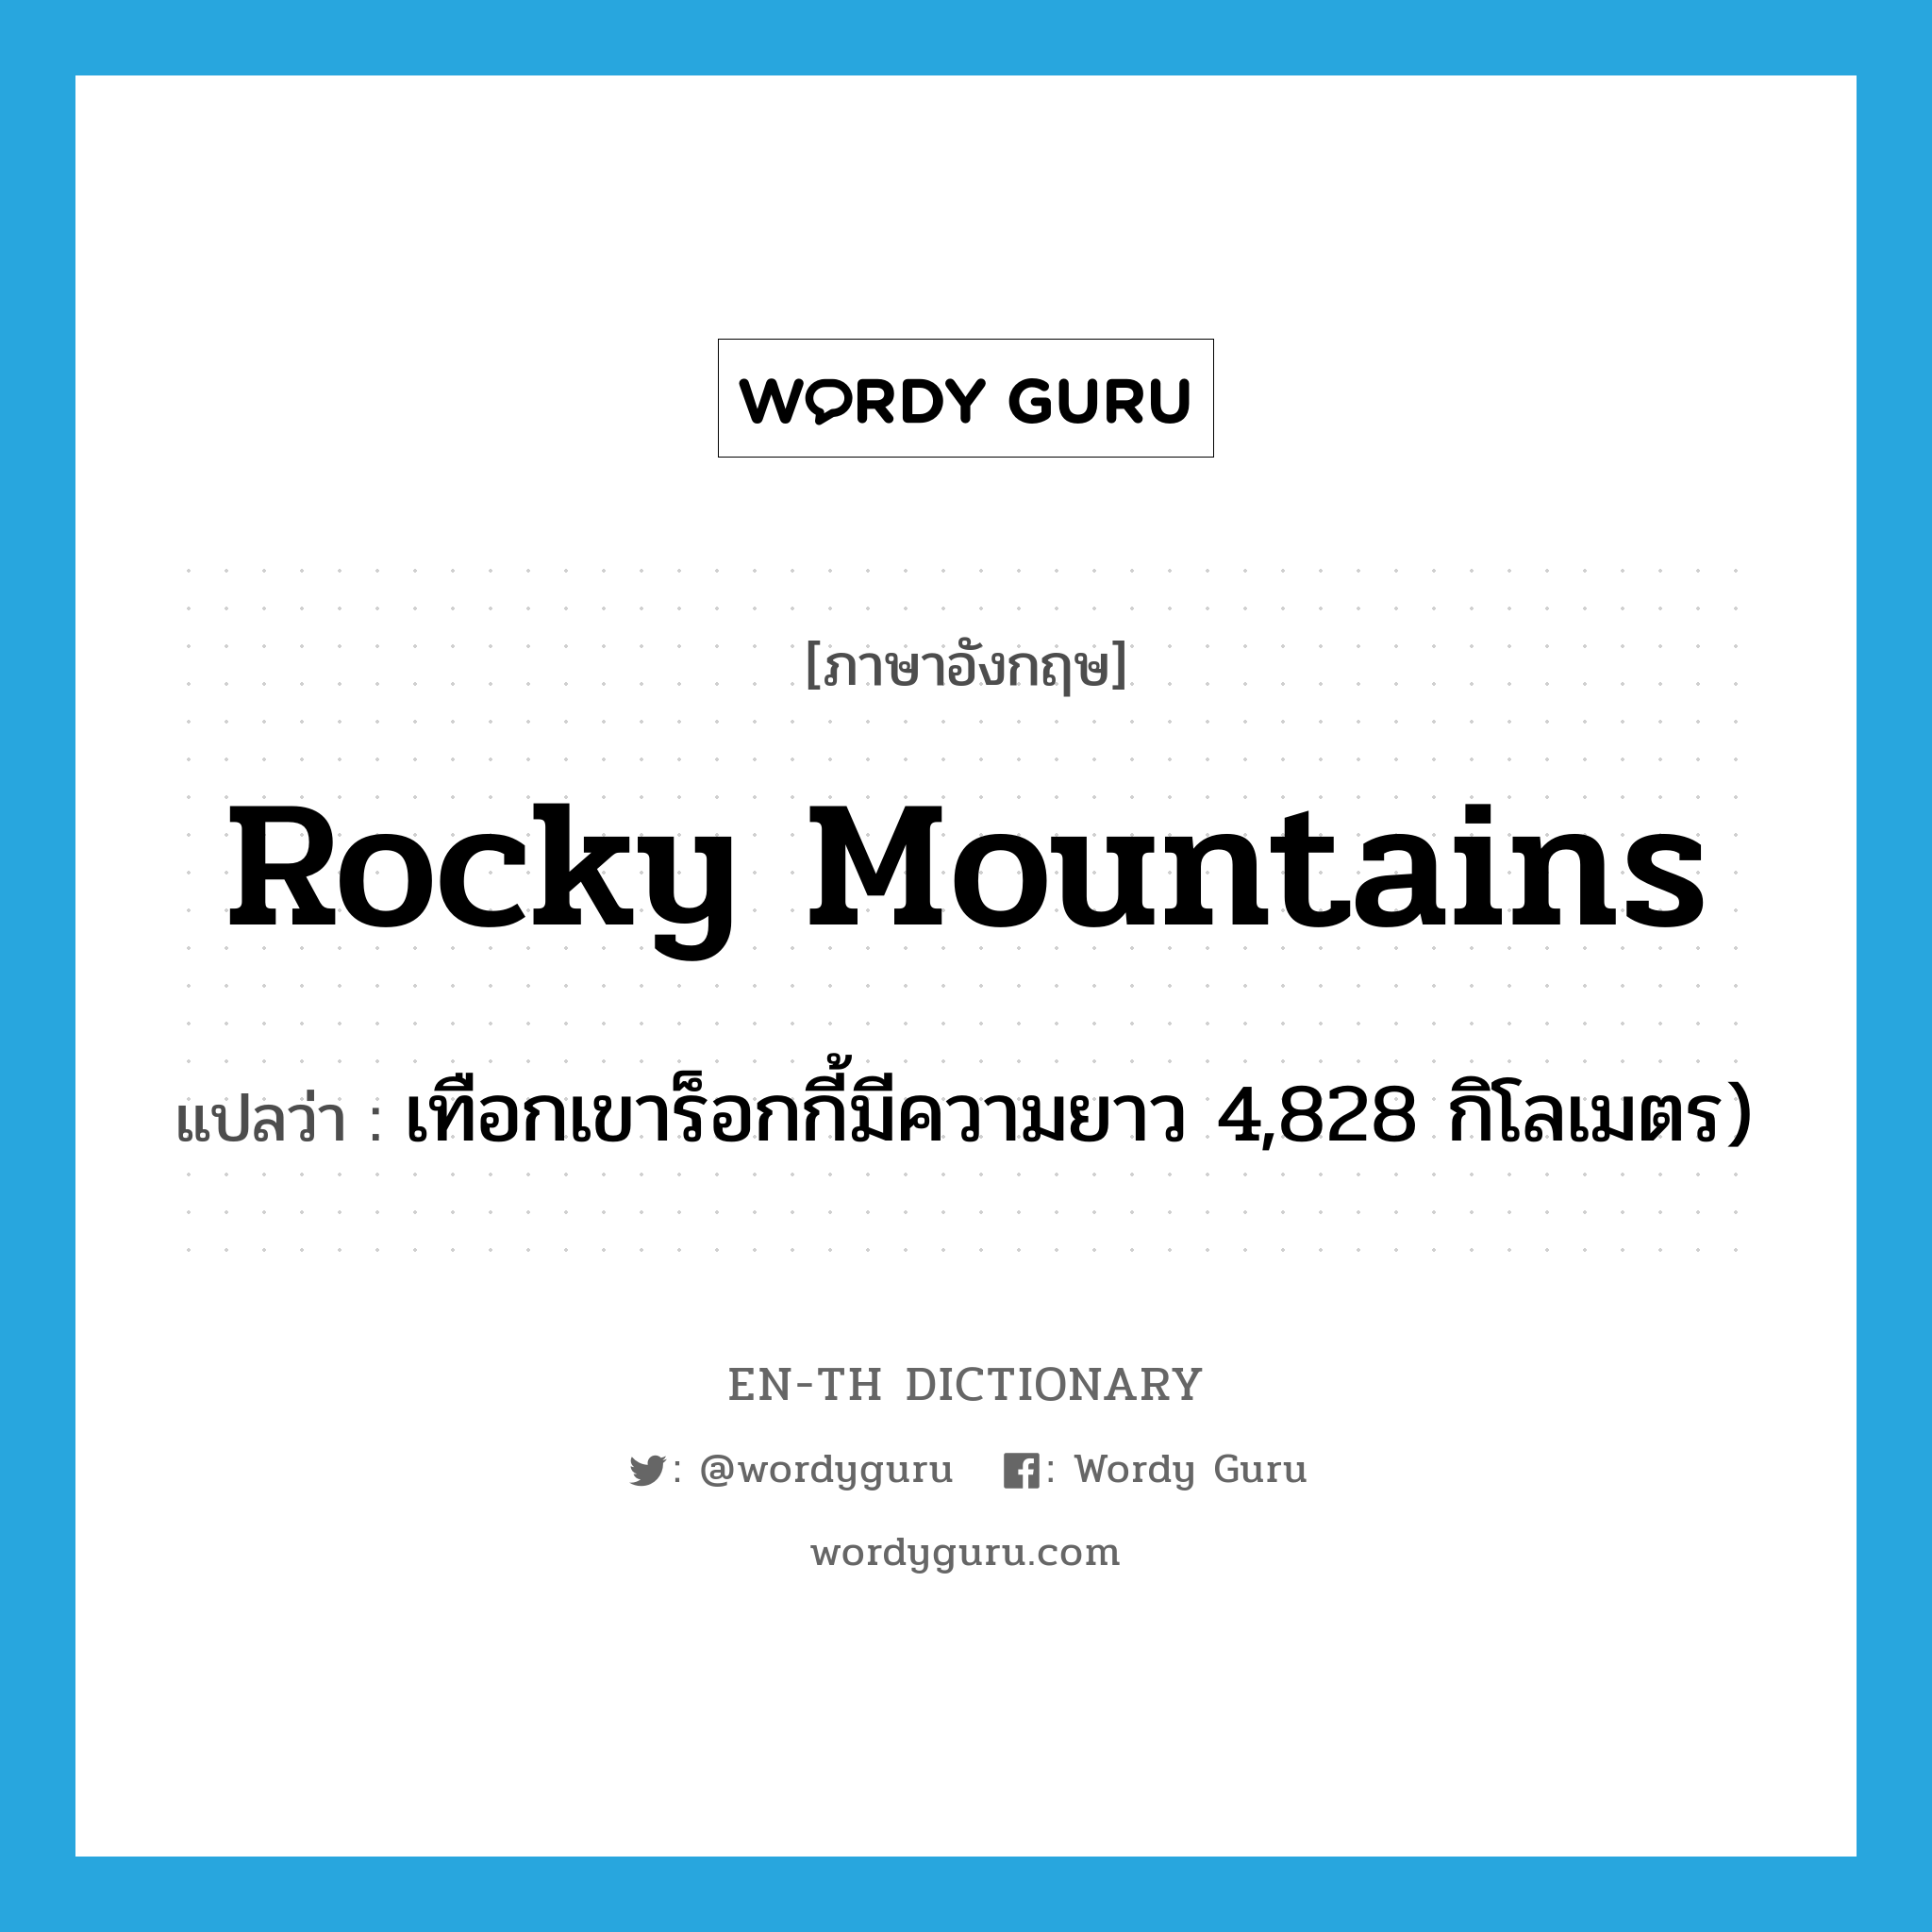 Rocky Mountains แปลว่า?, คำศัพท์ภาษาอังกฤษ Rocky Mountains แปลว่า เทือกเขาร็อกกี้มีความยาว 4,828 กิโลเมตร) ประเภท N หมวด N